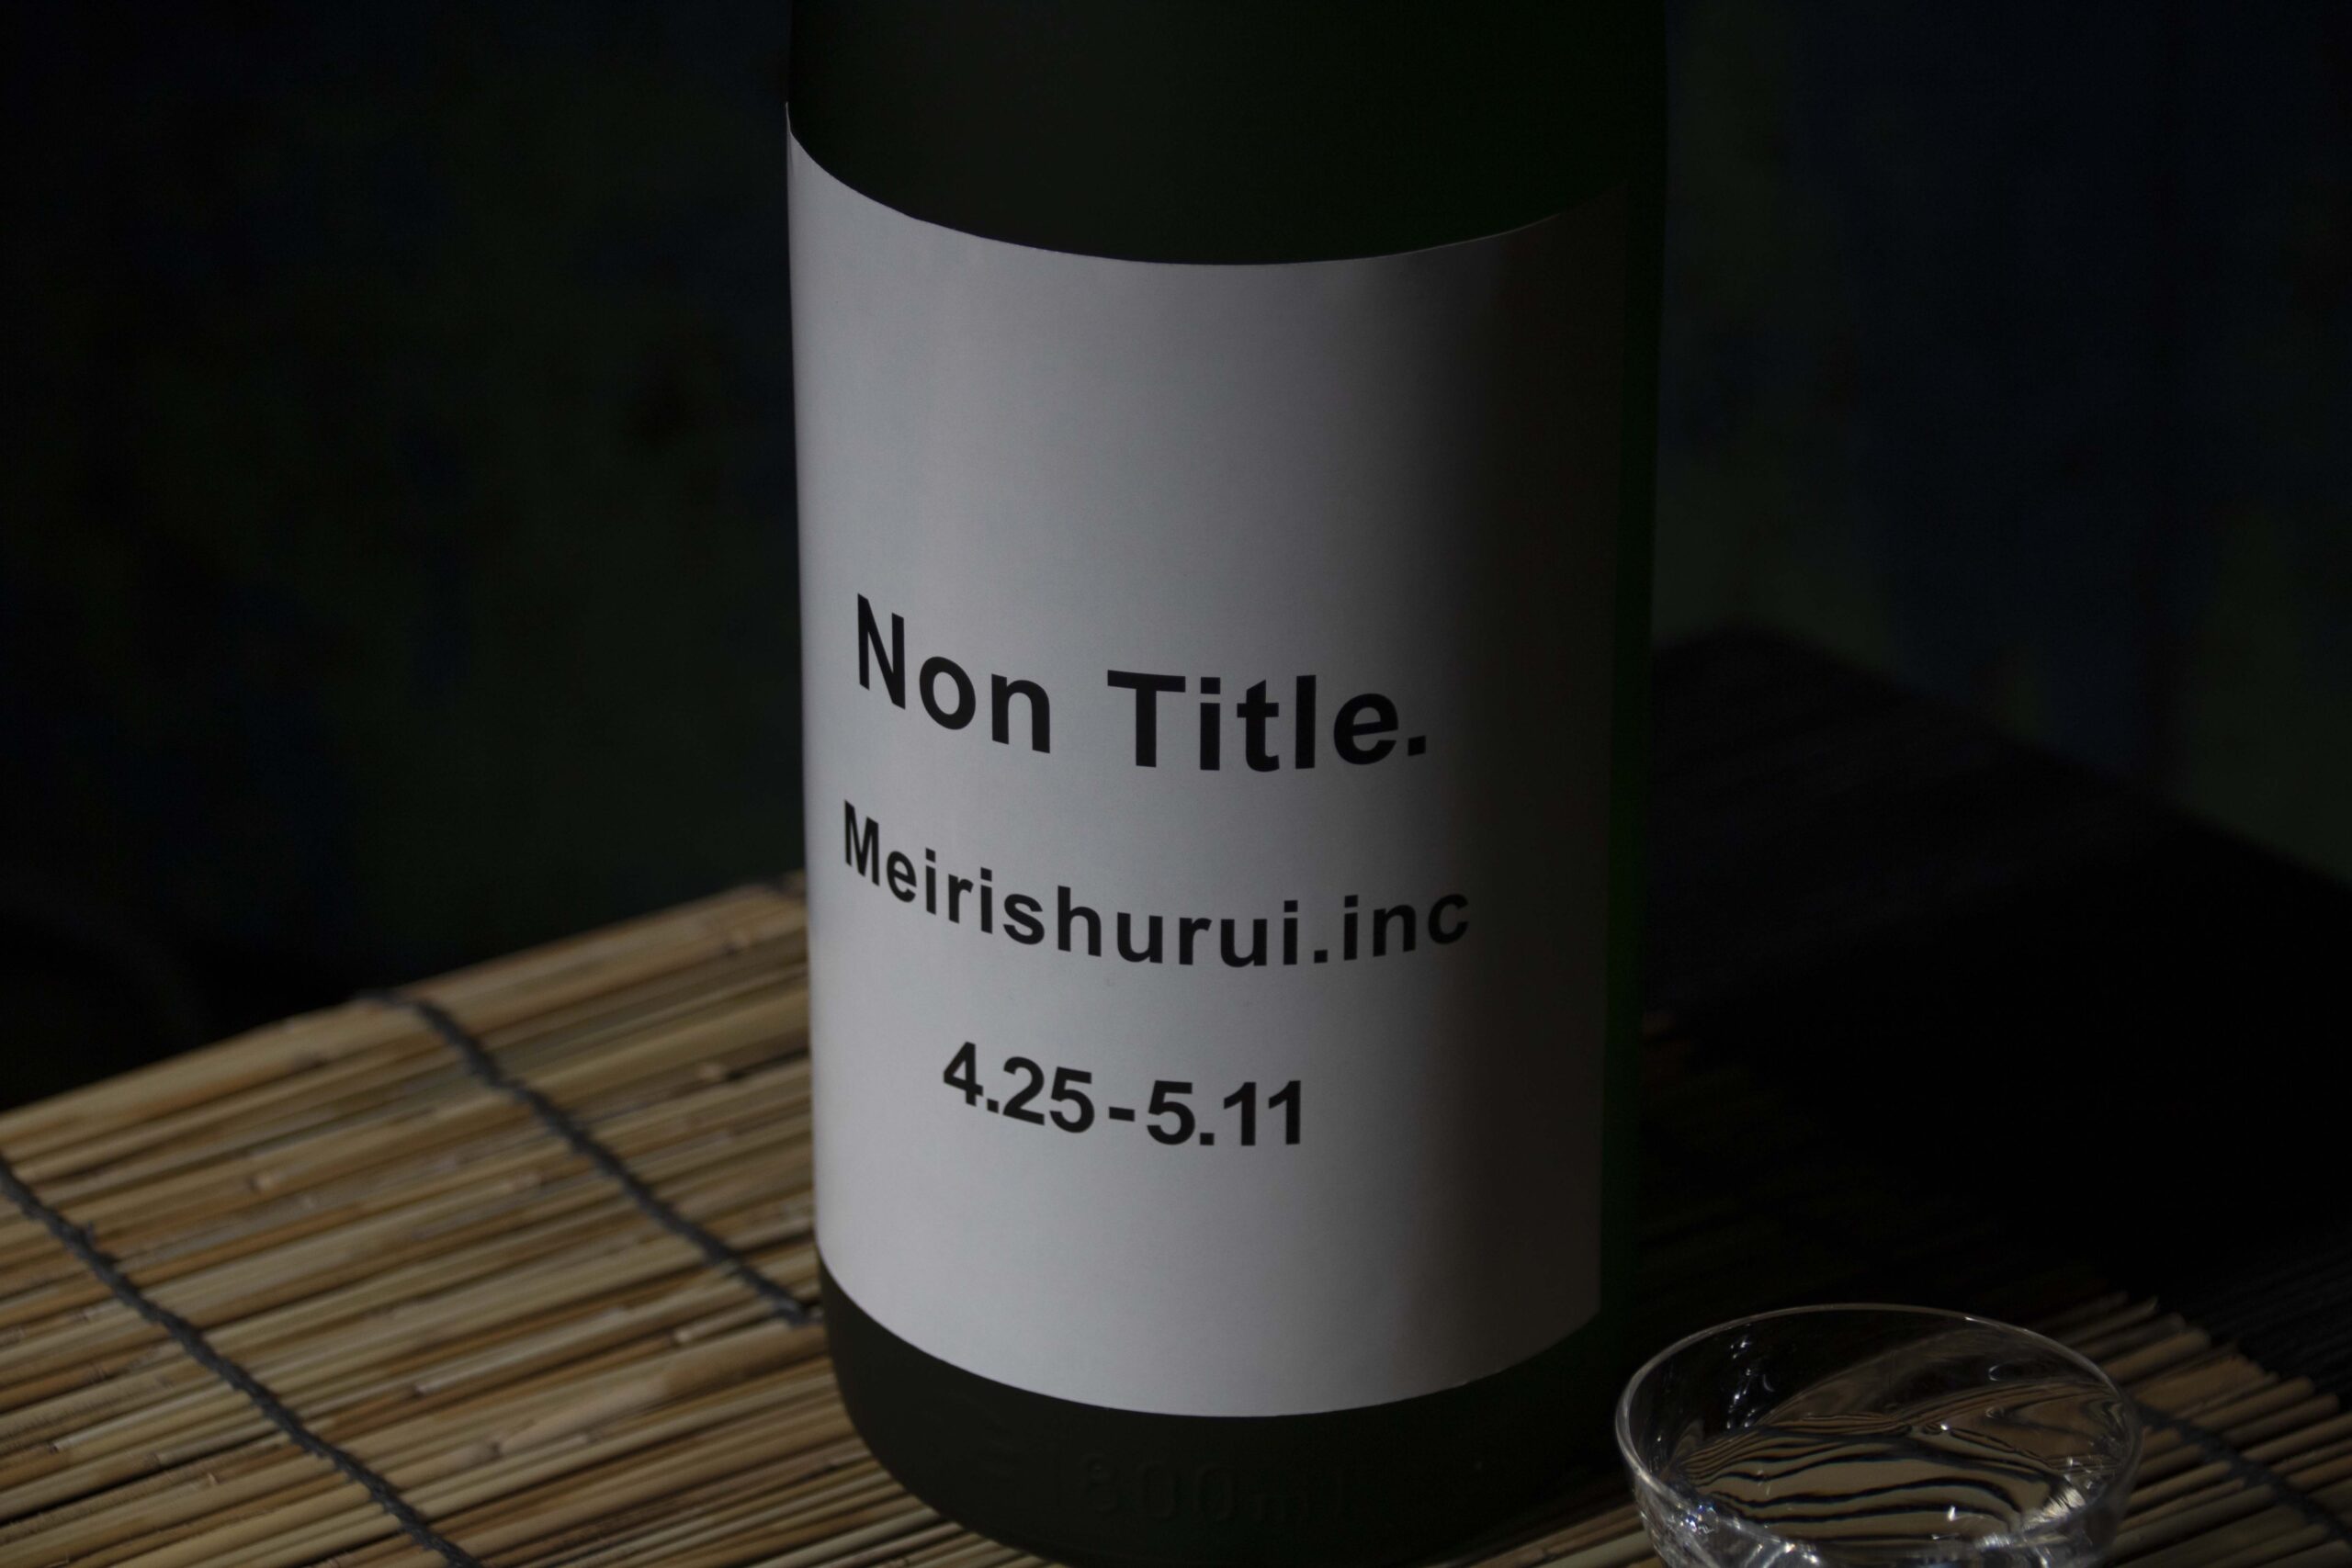 「それでもお酒に希望はある。」酒類提供禁止を受け、江戸時代から続く酒蔵から純米吟醸と梅酒を「NonTitle.（無題）」で特別価格販売